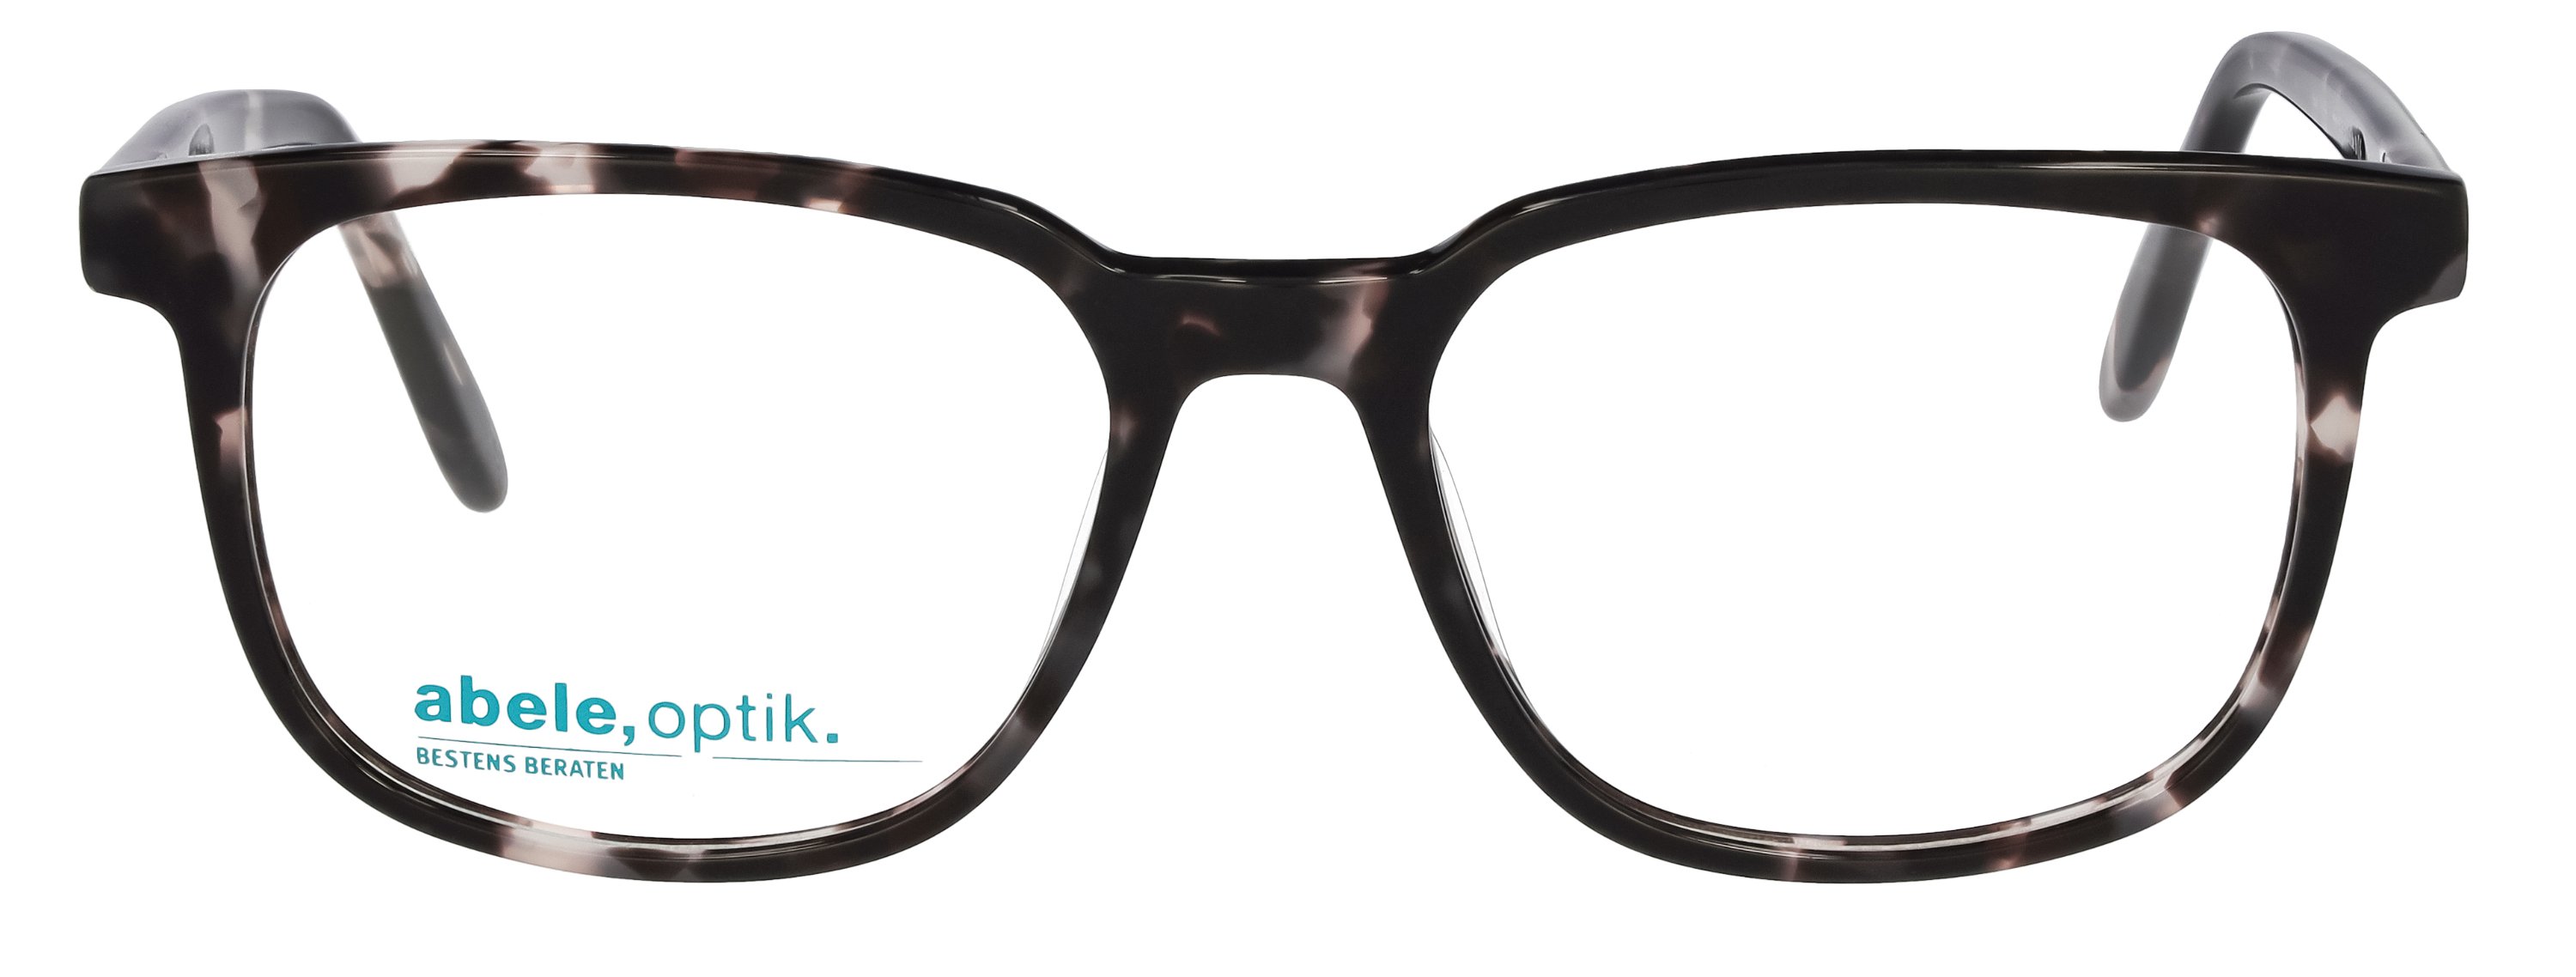 abele optik Brille 148301 für Herren in schwarz / braun gemustert